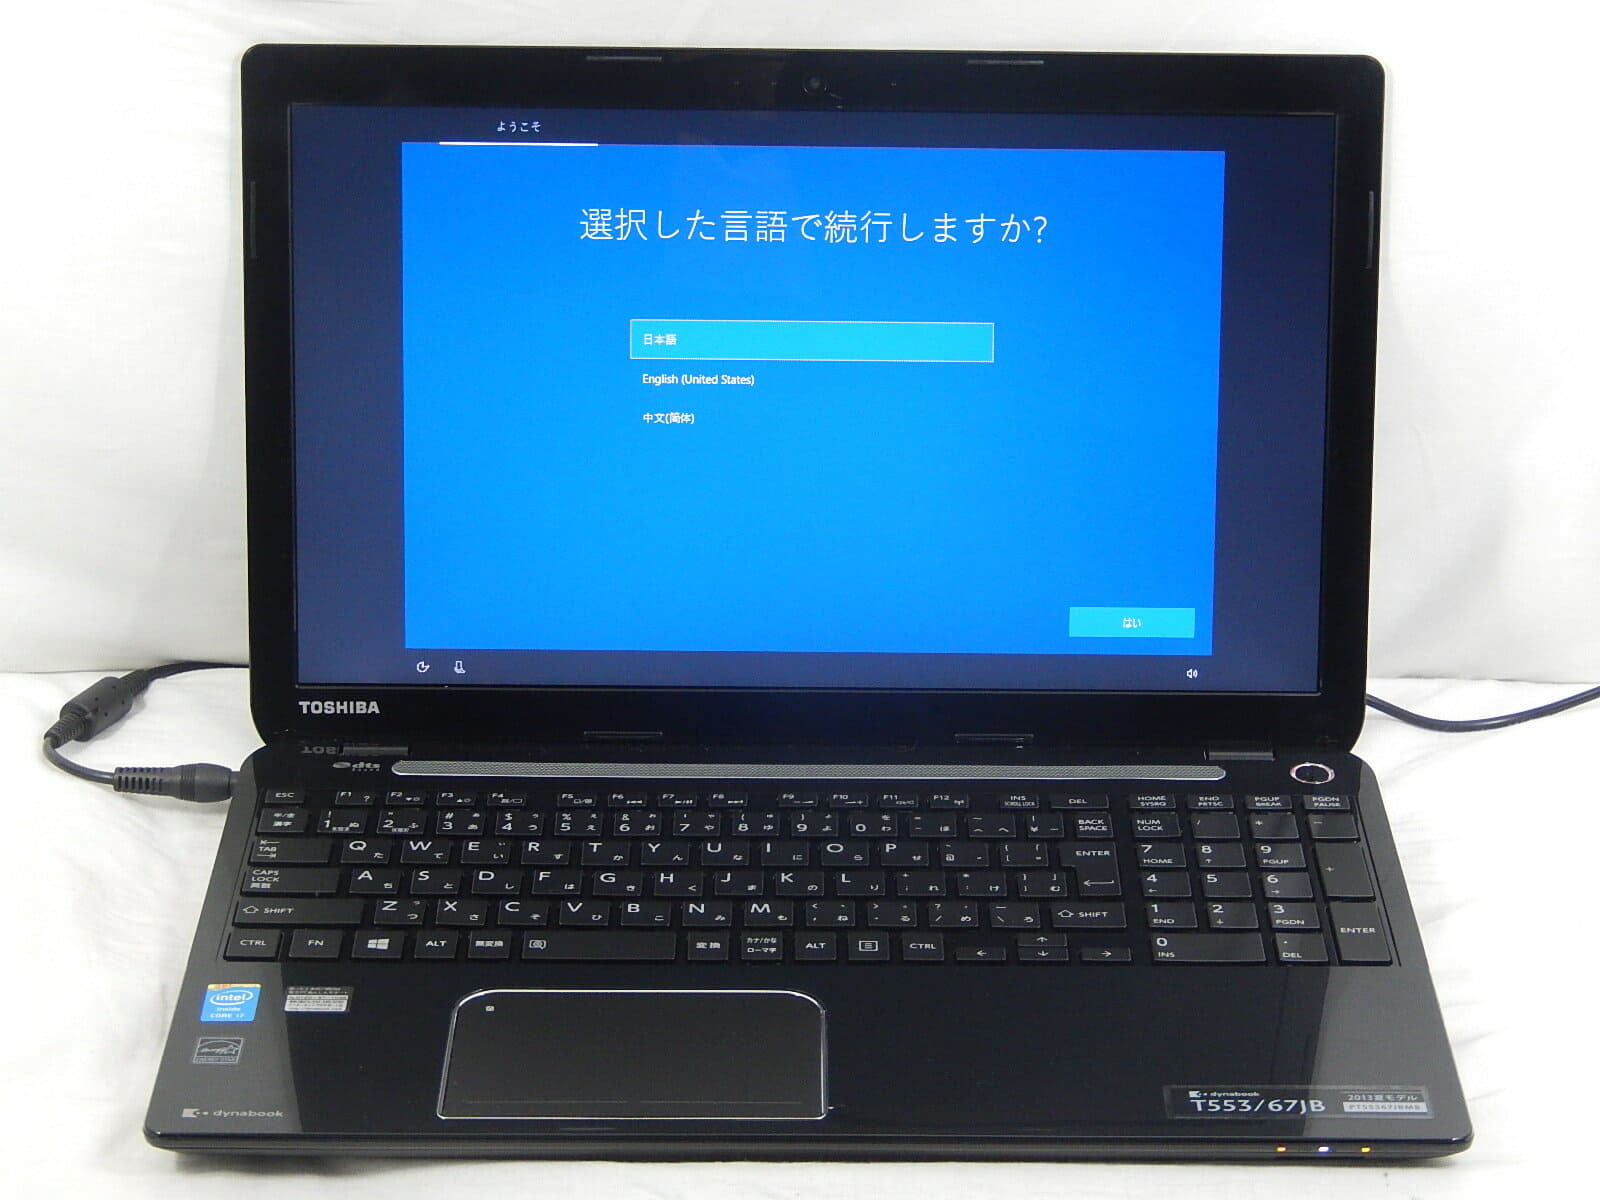 Used]TOSHIBA DynaBook T553/67JB/PT55367JBMB/Corei7 4700MQ 2.4GHz